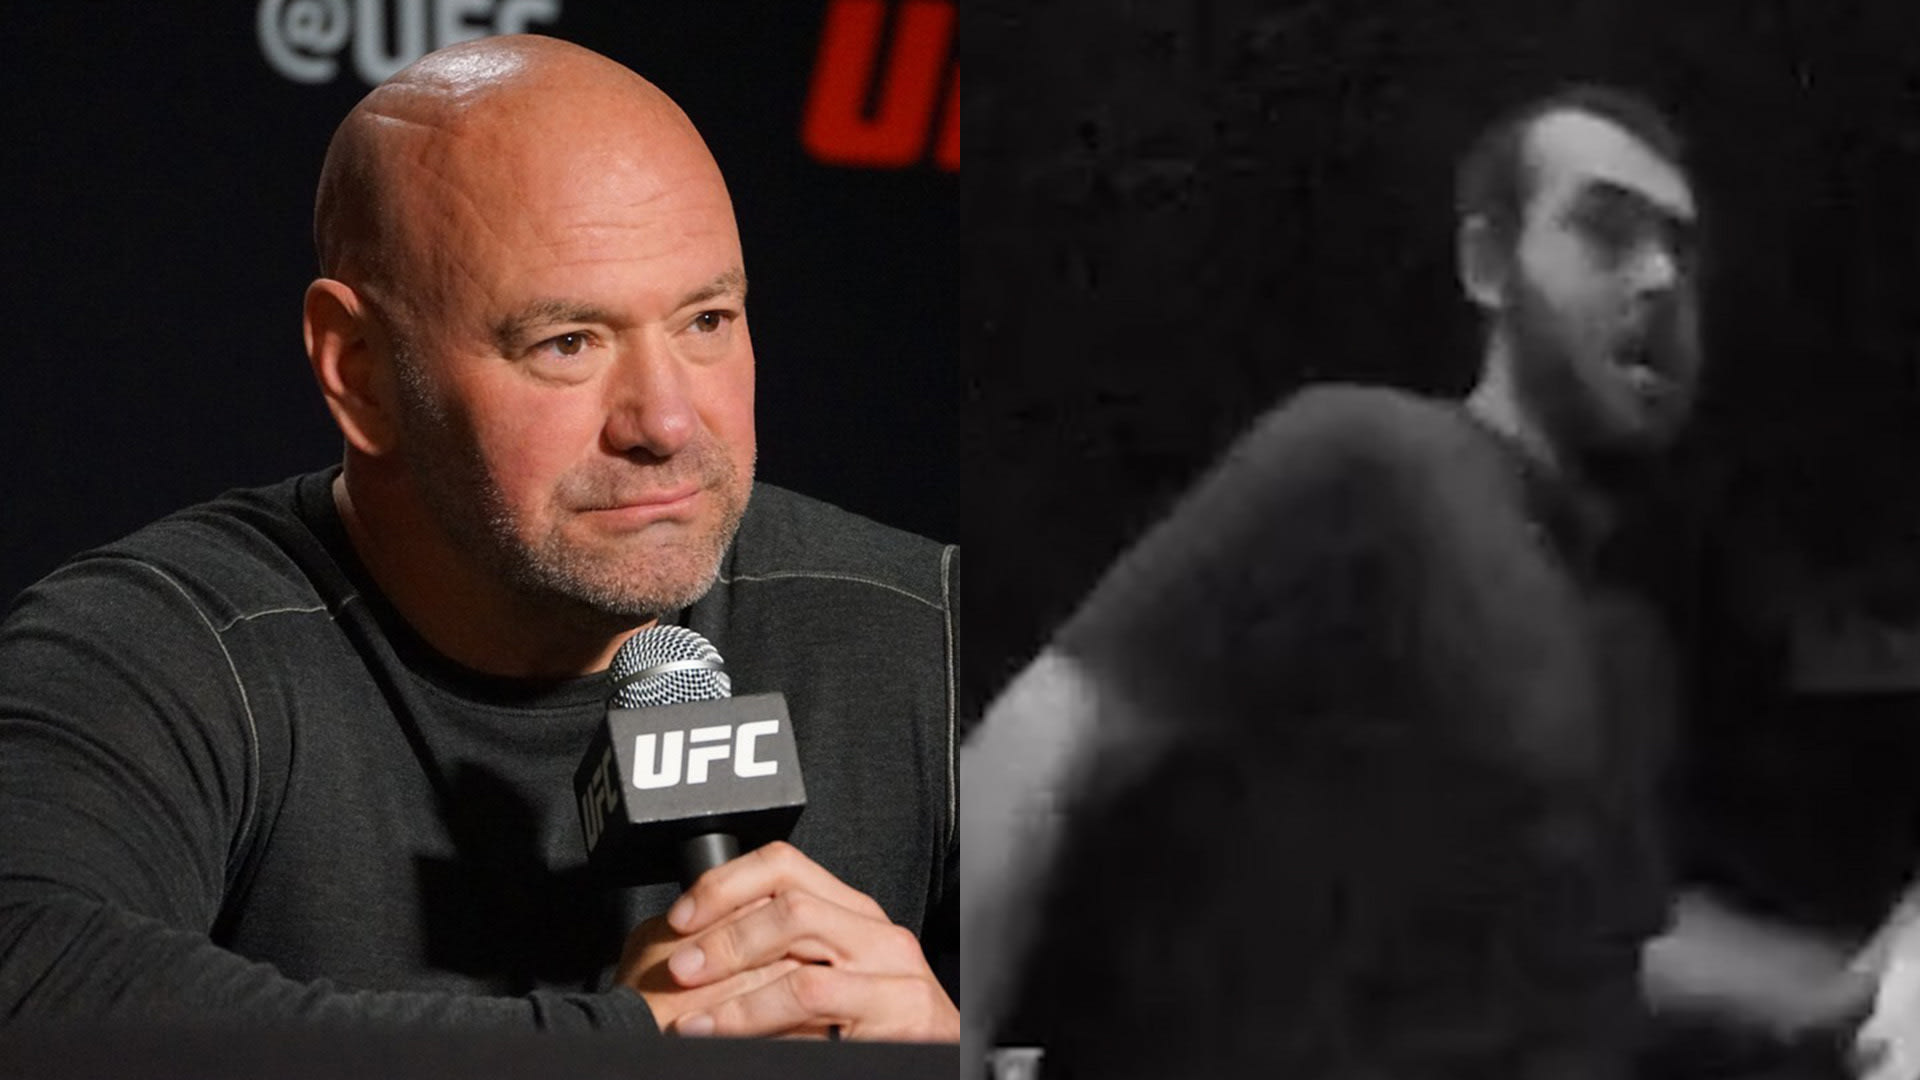 Šéf UFC Dana White hledá muže, který chtěl vykopnout dveře jeho domu.